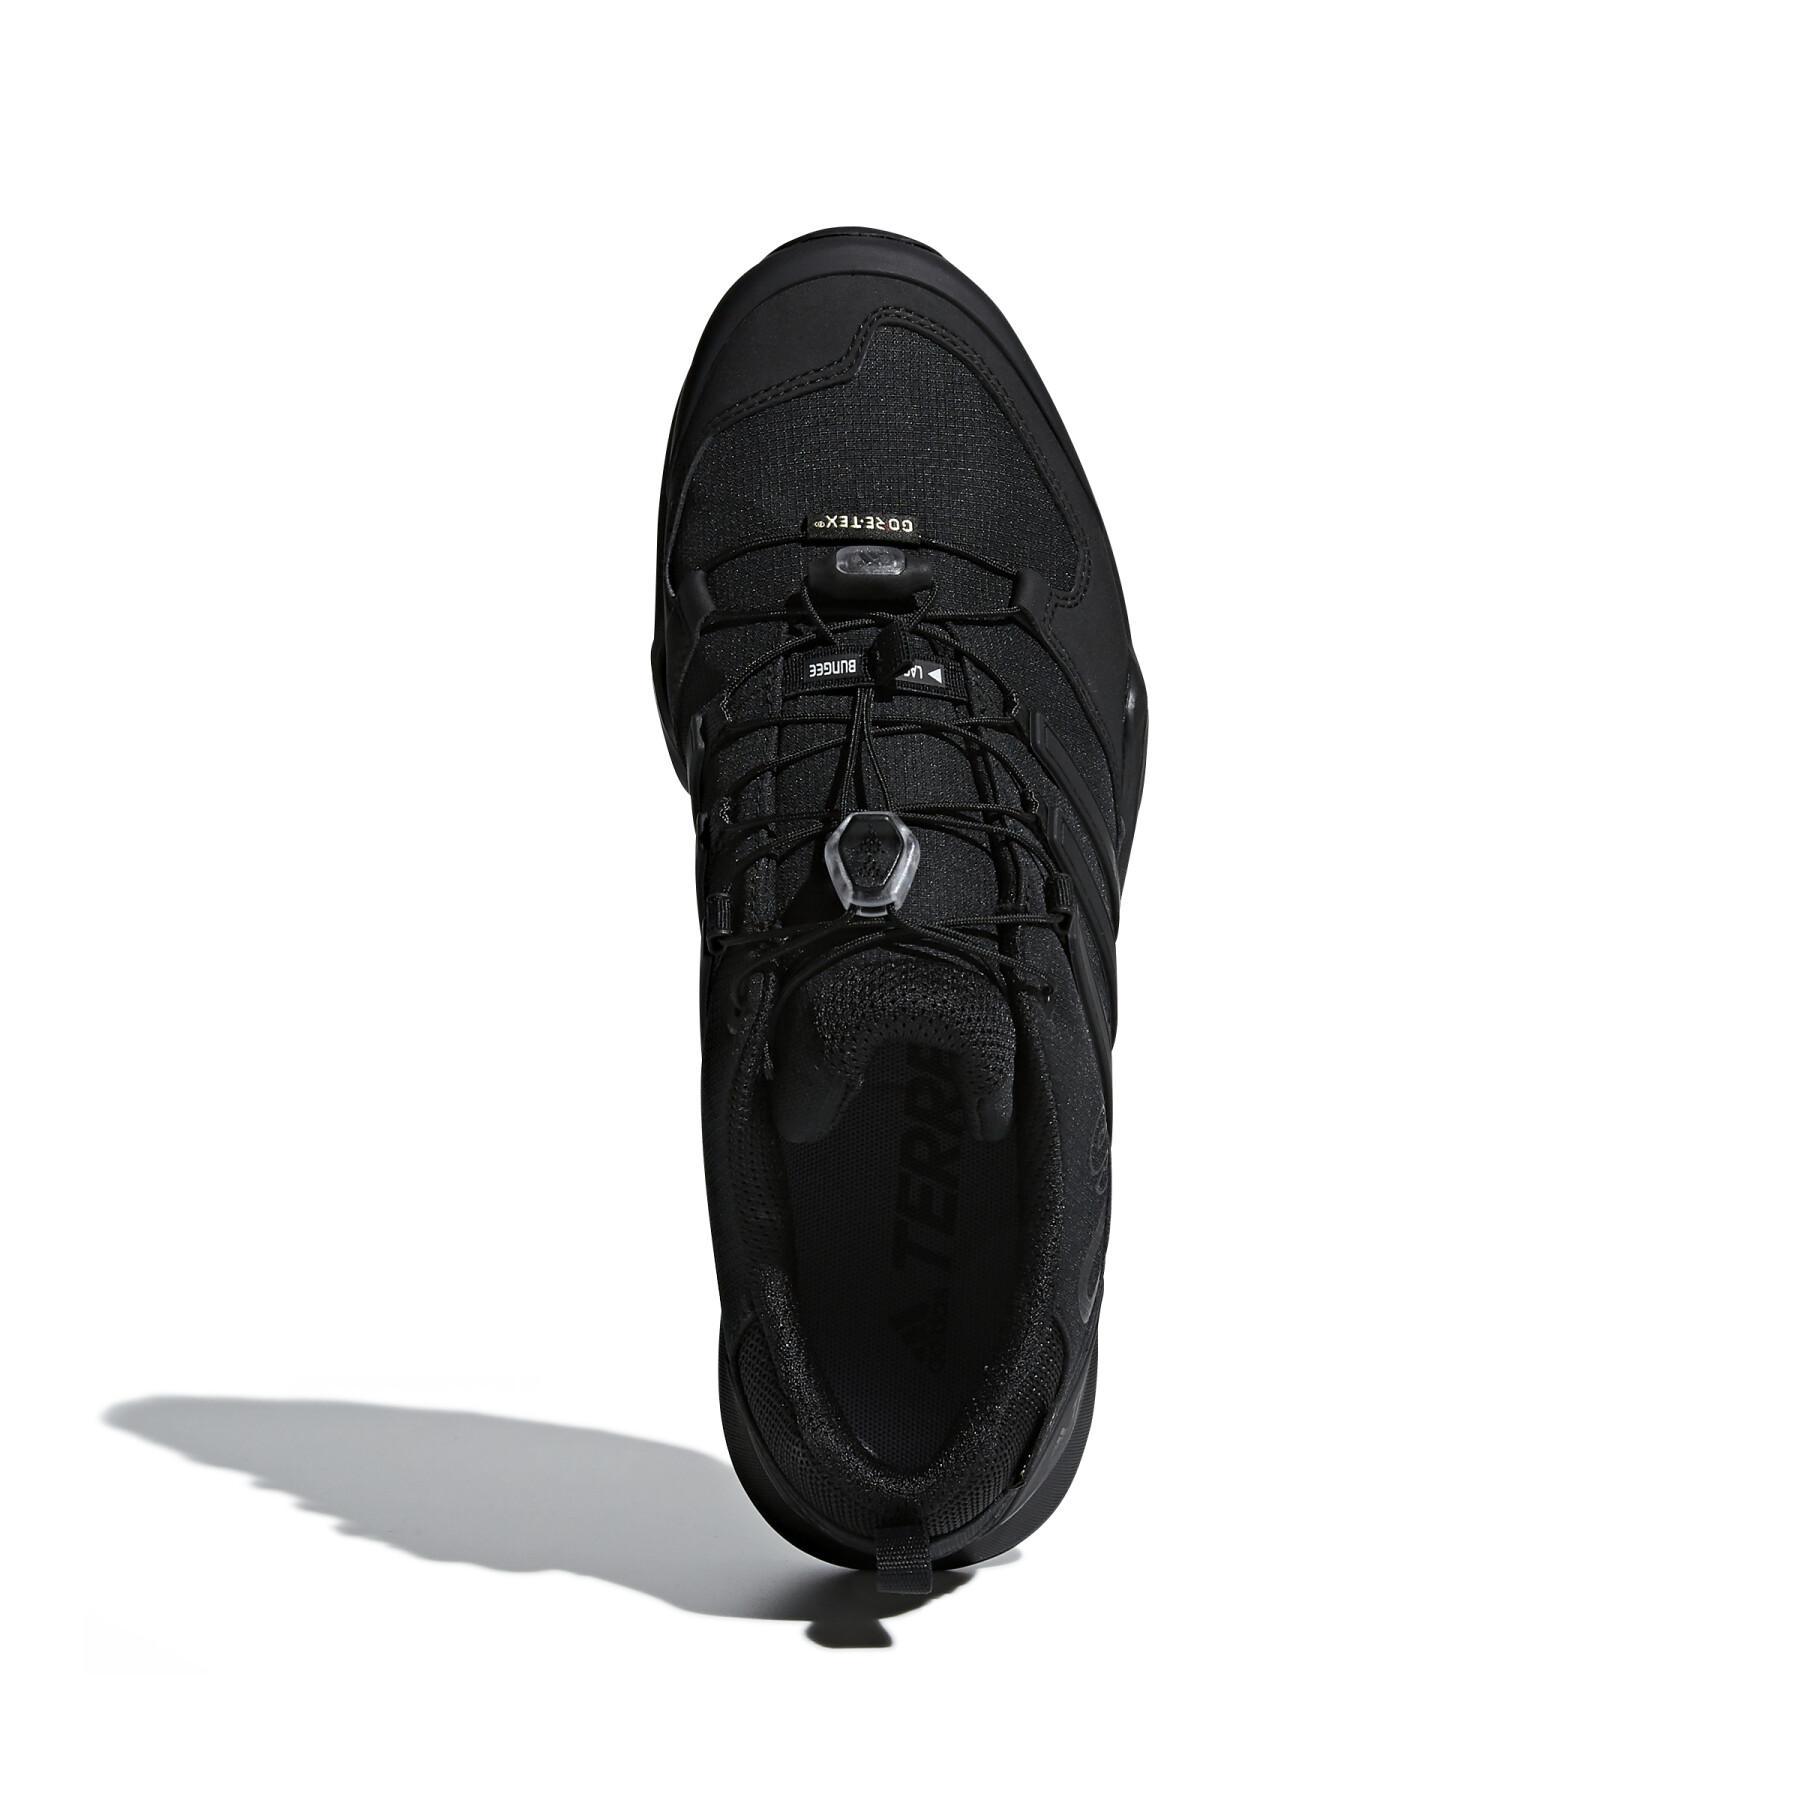 Chaussures de randonnée adidas Terrex swift r2 gtx